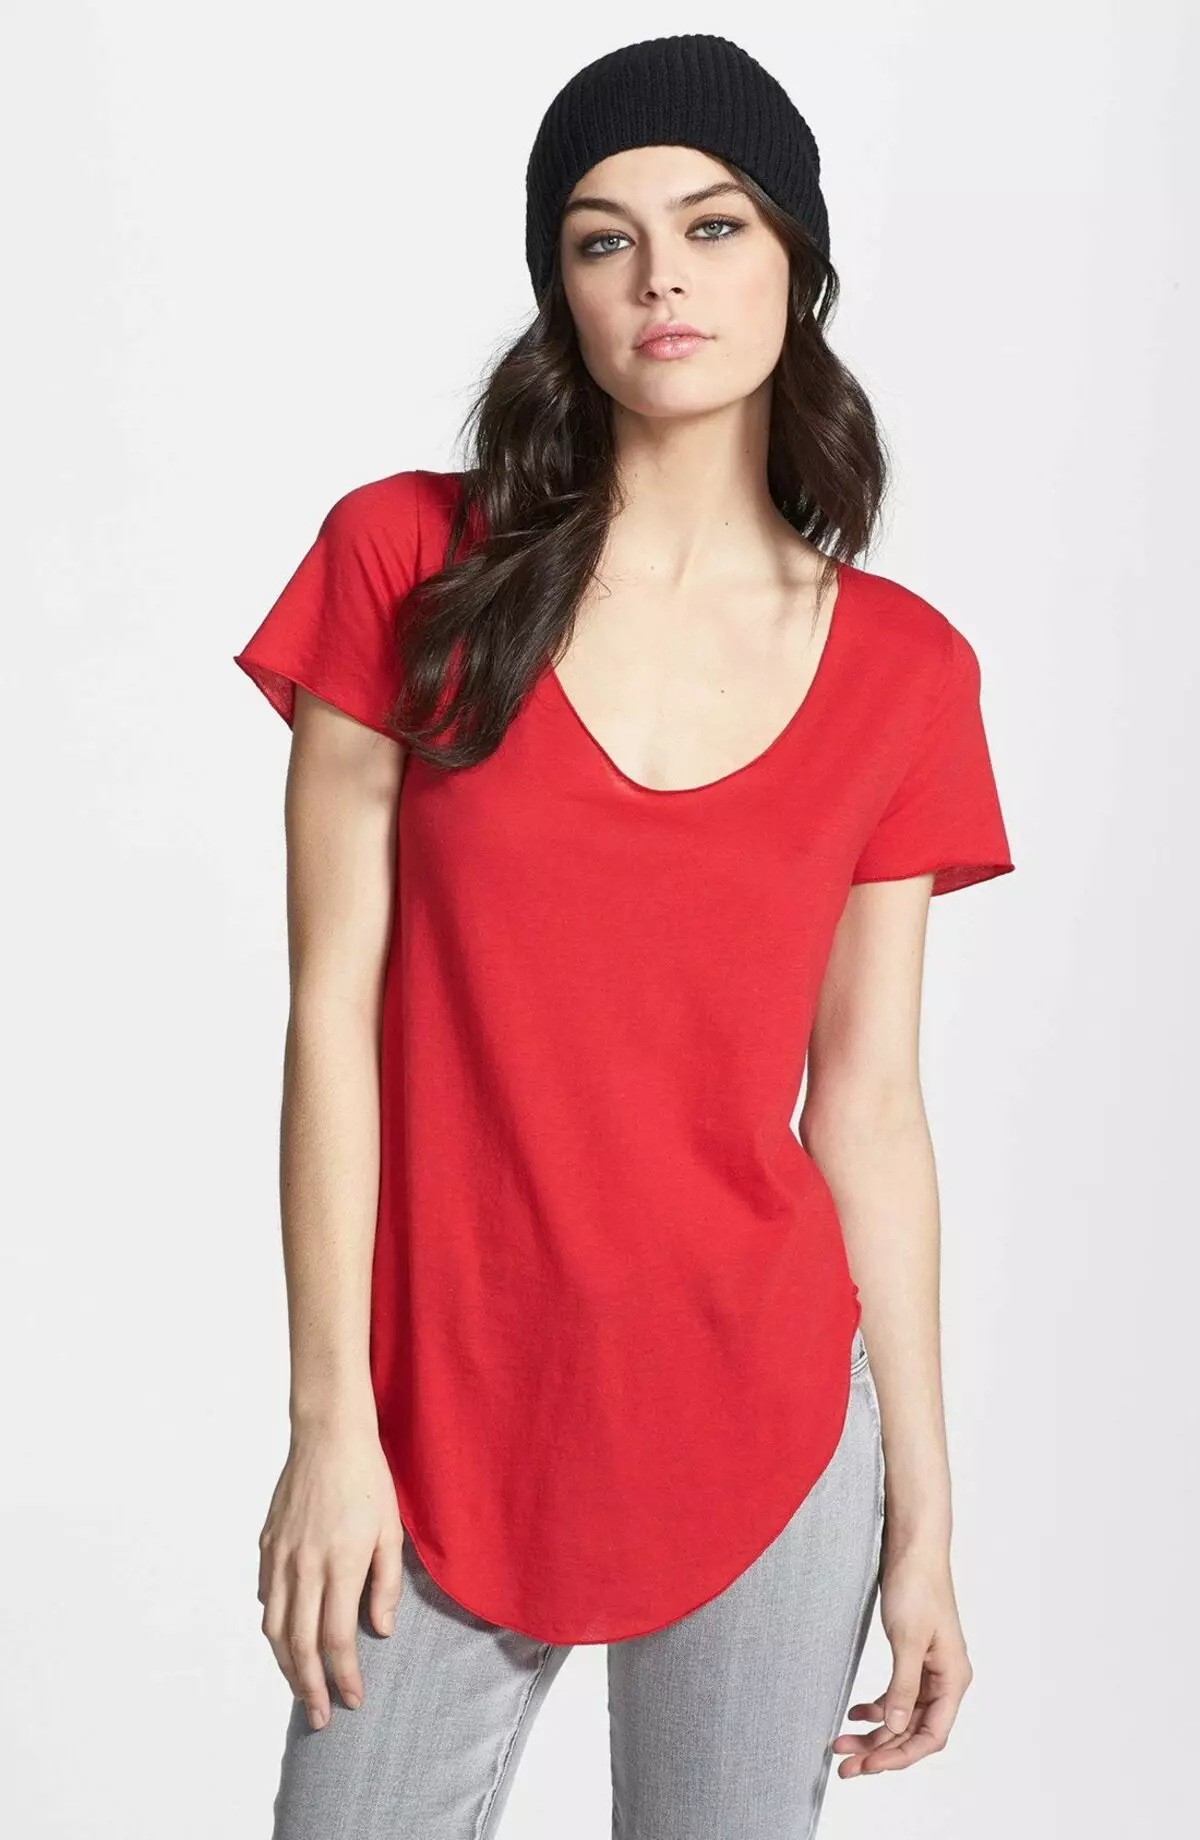 Red Tシャツ（78枚の写真）：女性のTシャツ、ポロを着用して組み合わせたもの 14584_70